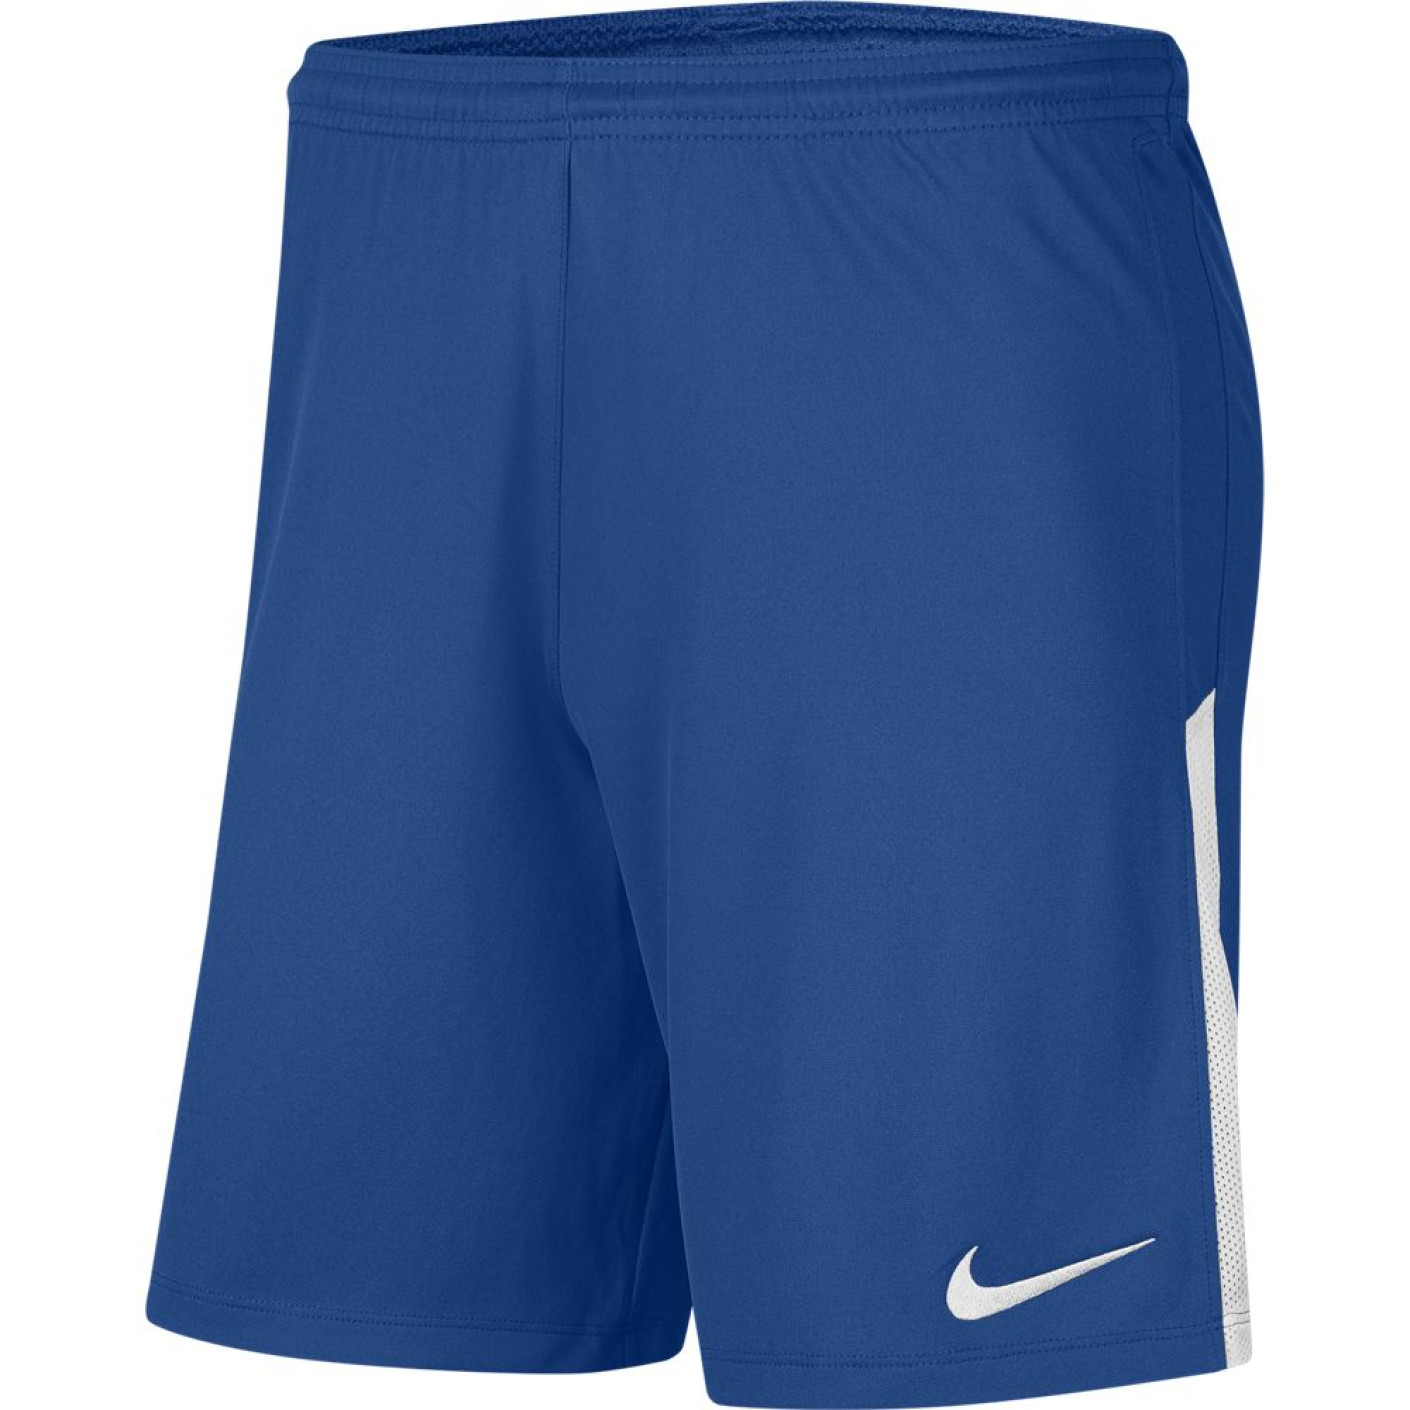 Short Nike Dry League KNIT II NB Bleu